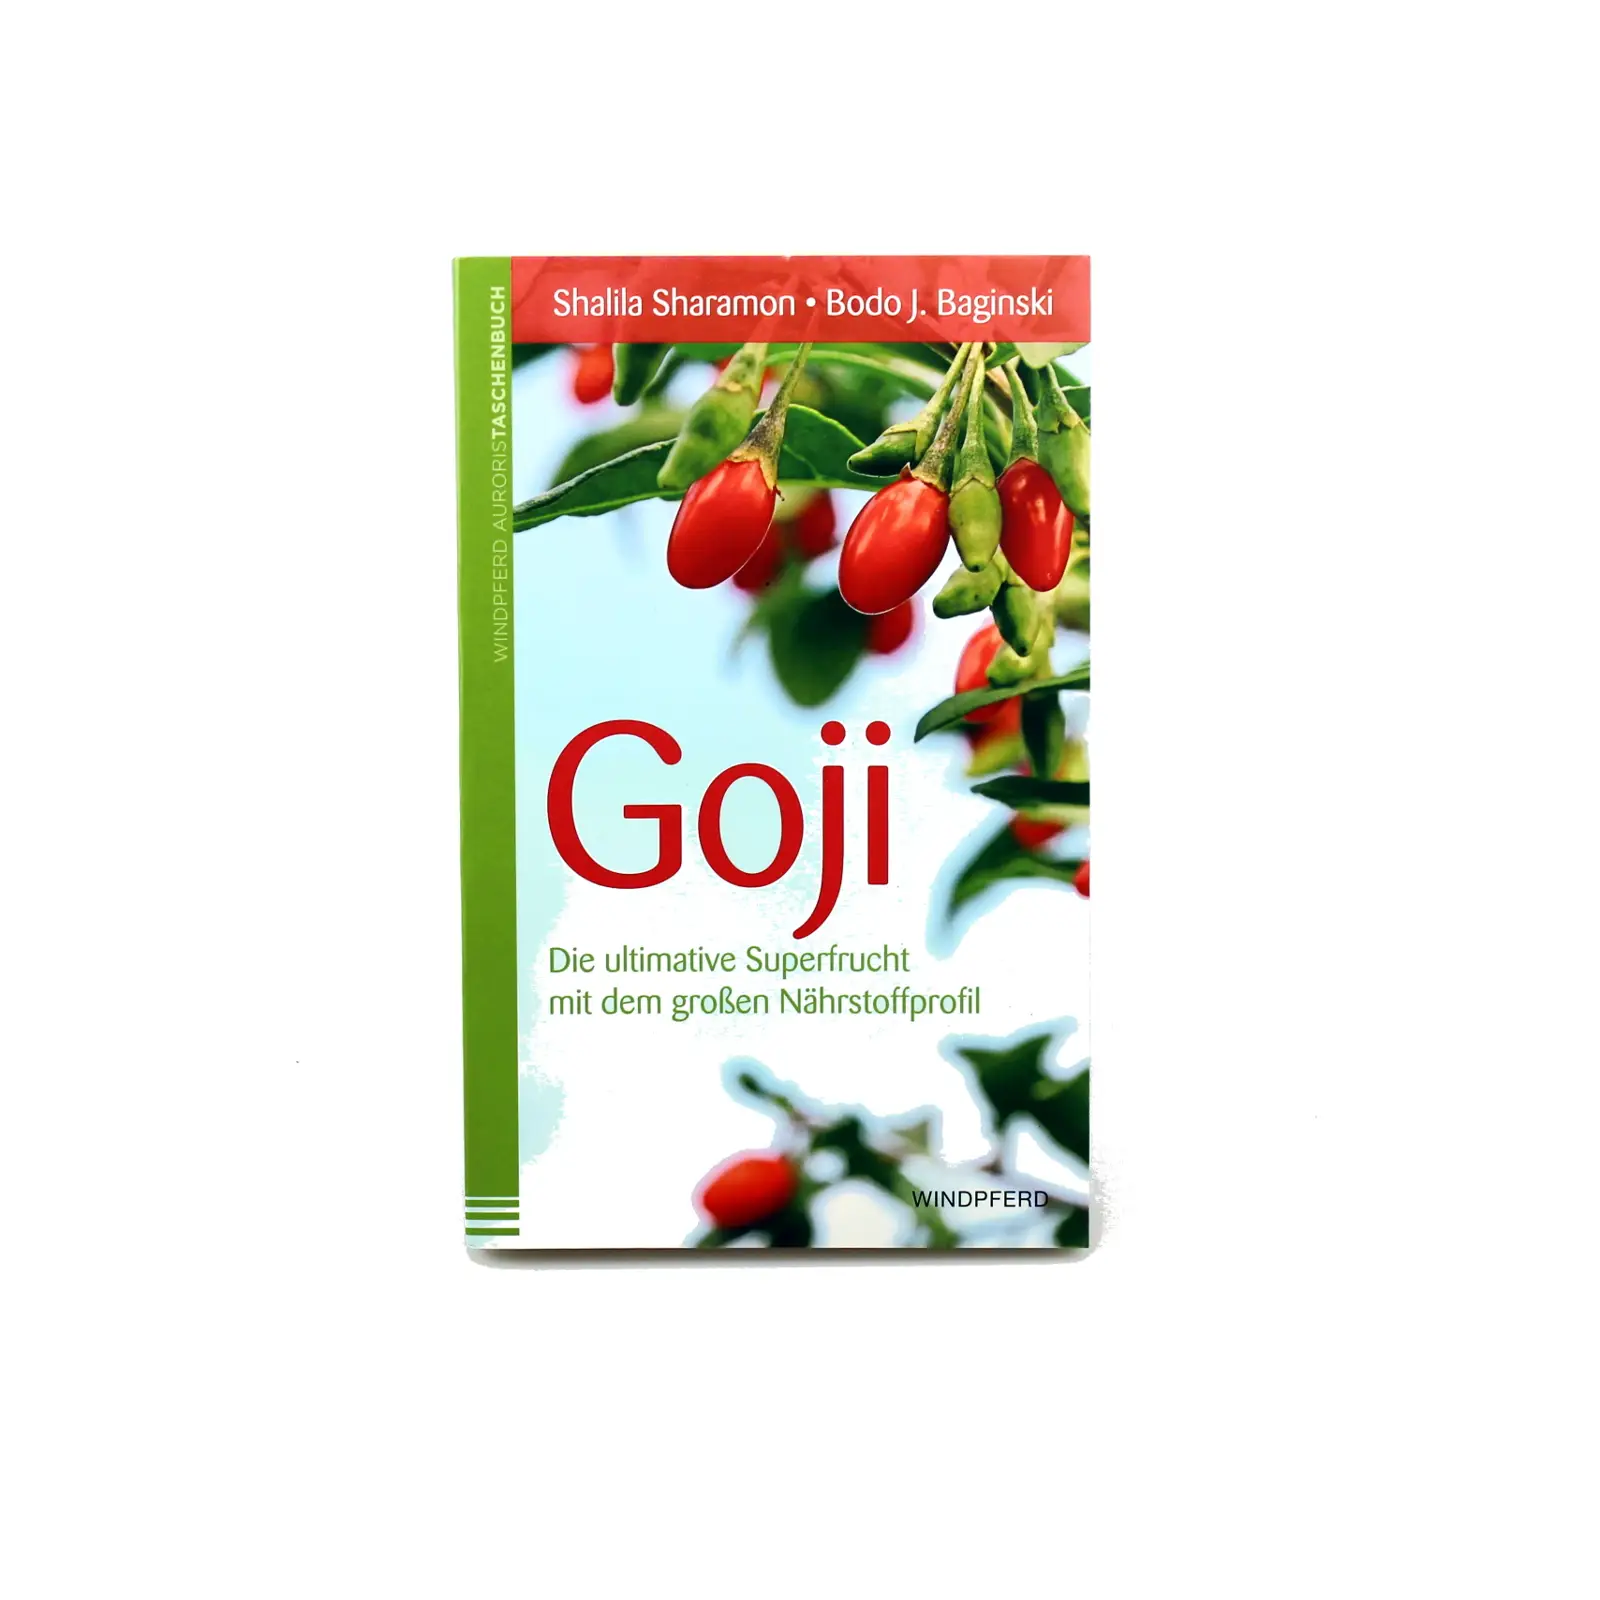 Goji - Die ultimative Superfrucht - Buch